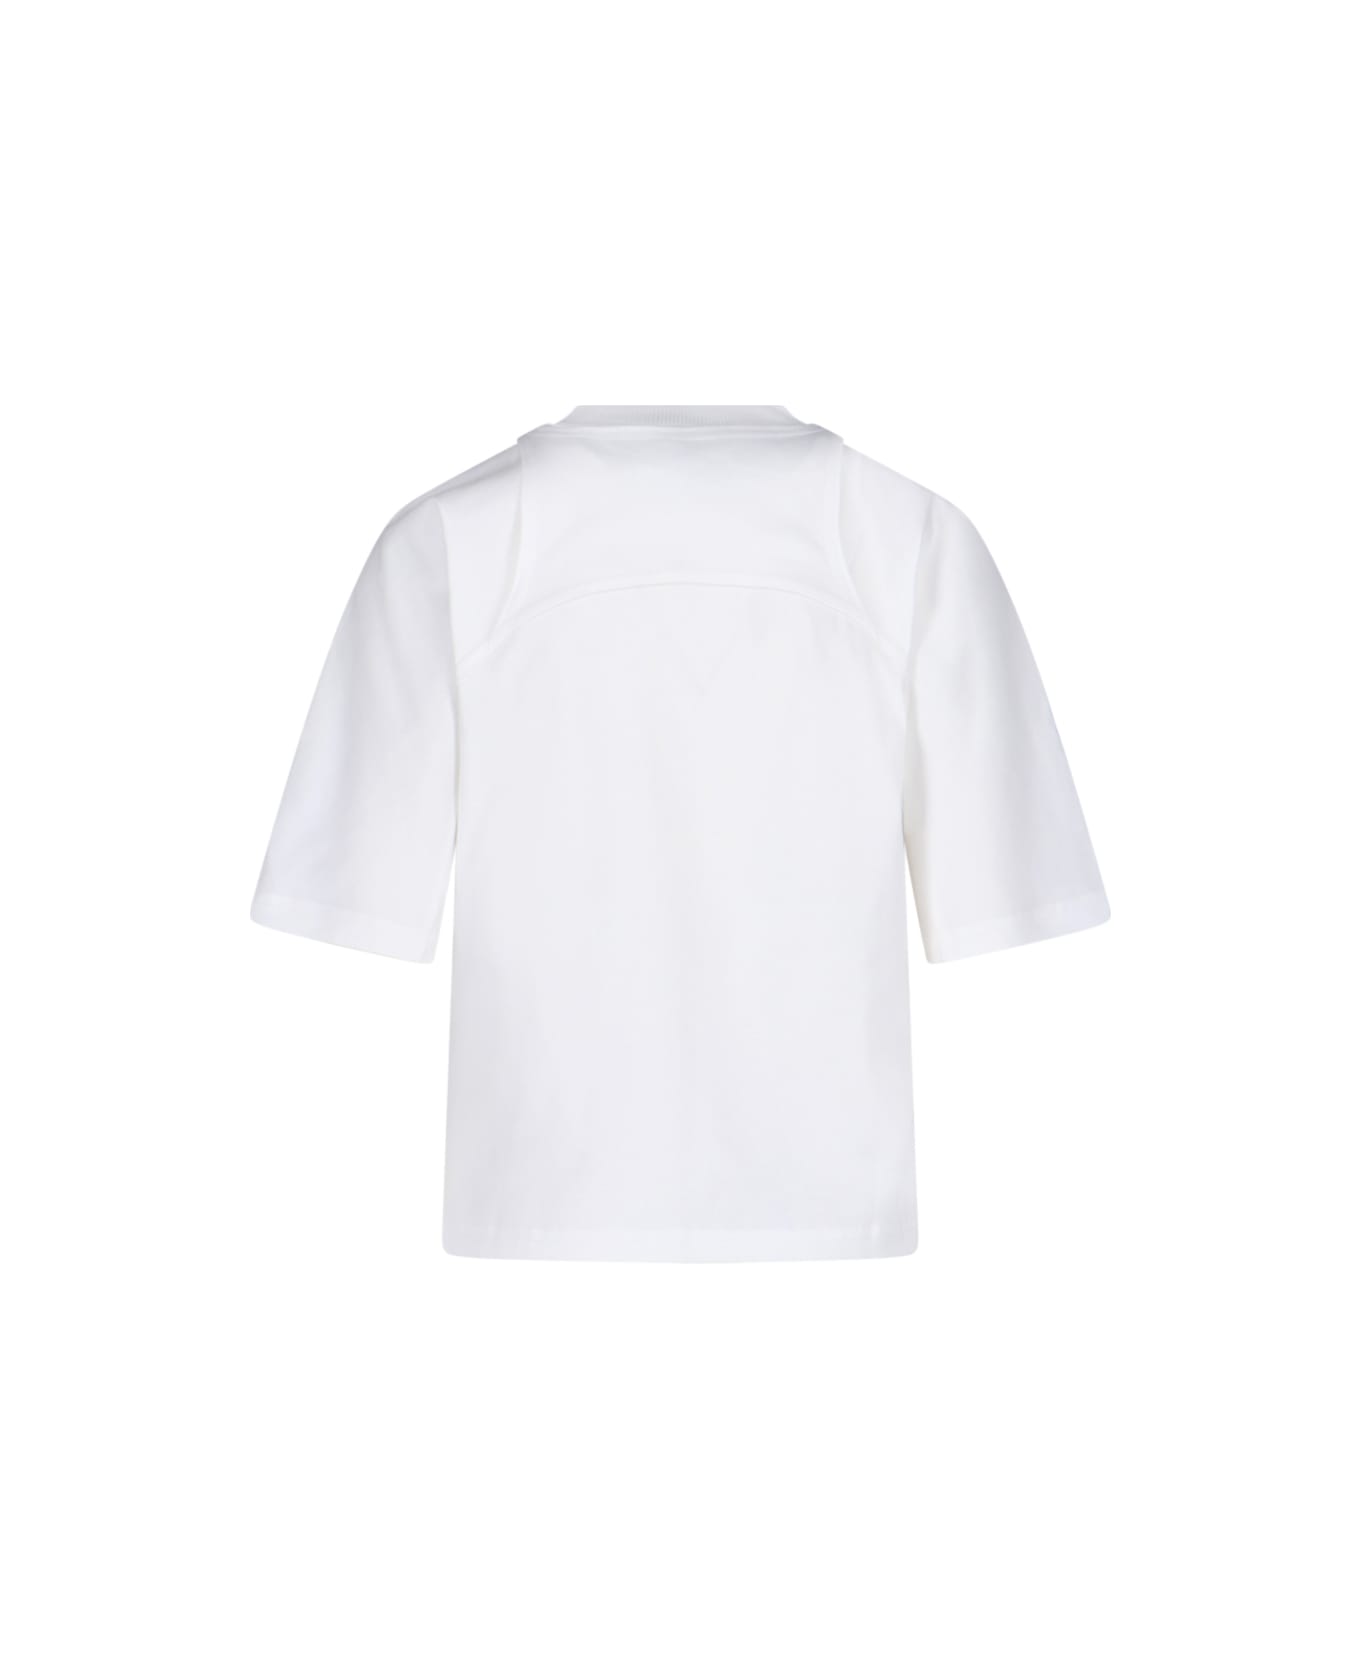 Off-White Logo T-shirt - White Tシャツ